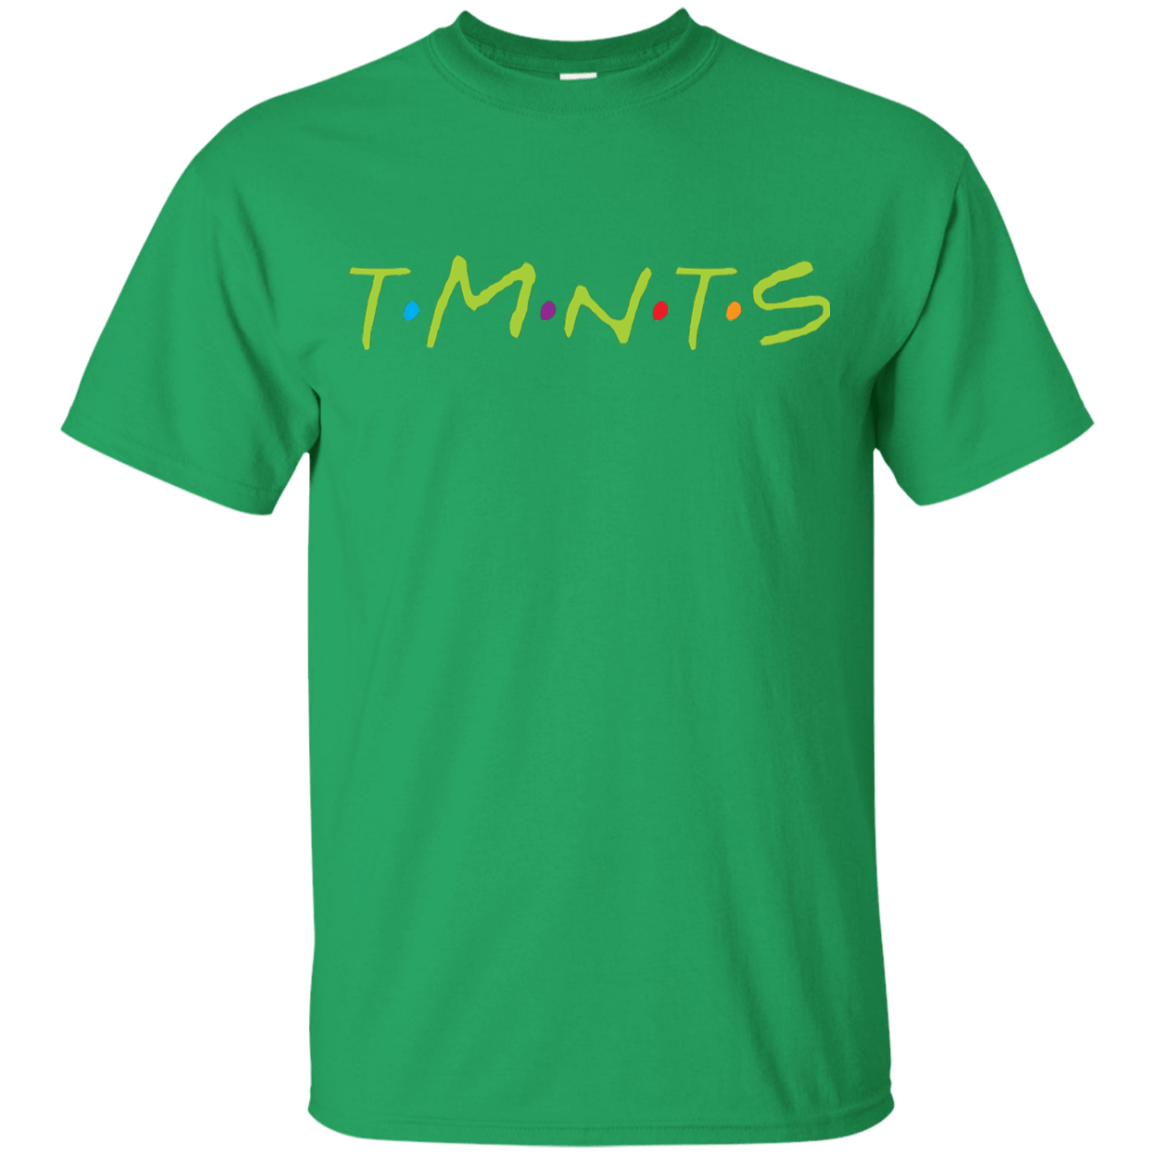 T-Shirts Irish Green / YXS TMNTS Youth T-Shirt